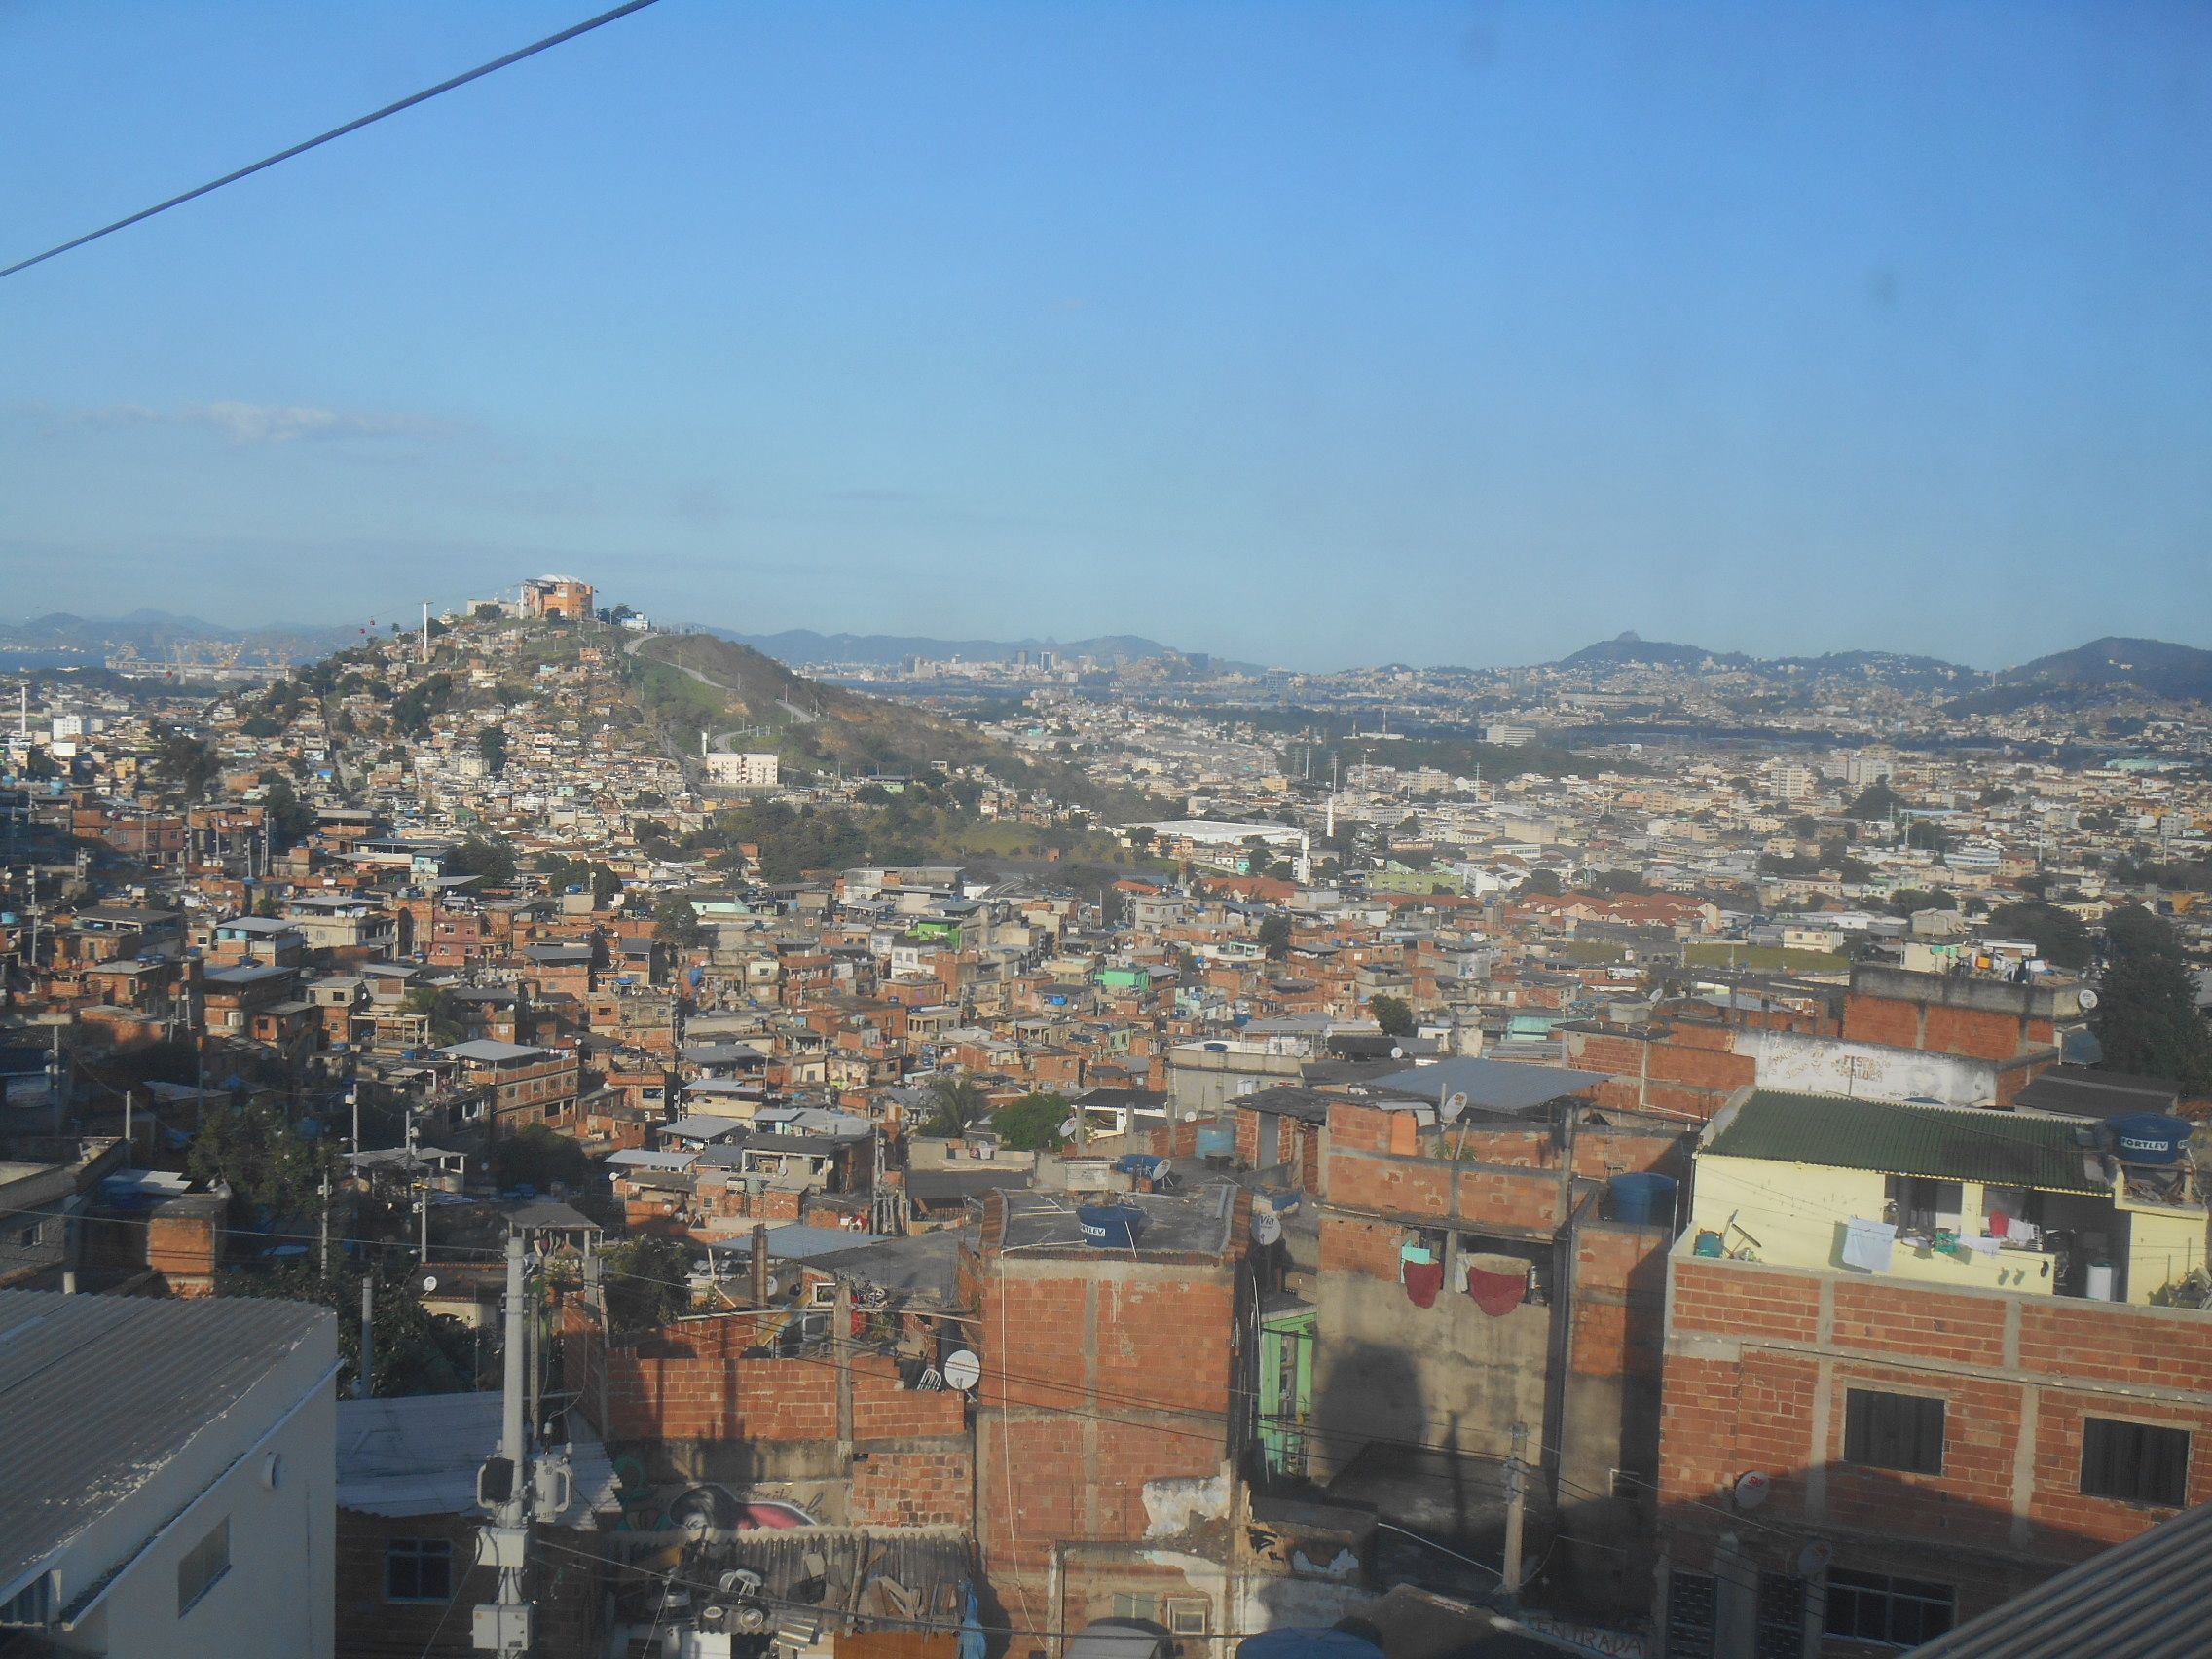 Bresil- Rio de Janeiro: Favela Complexo do Alemão